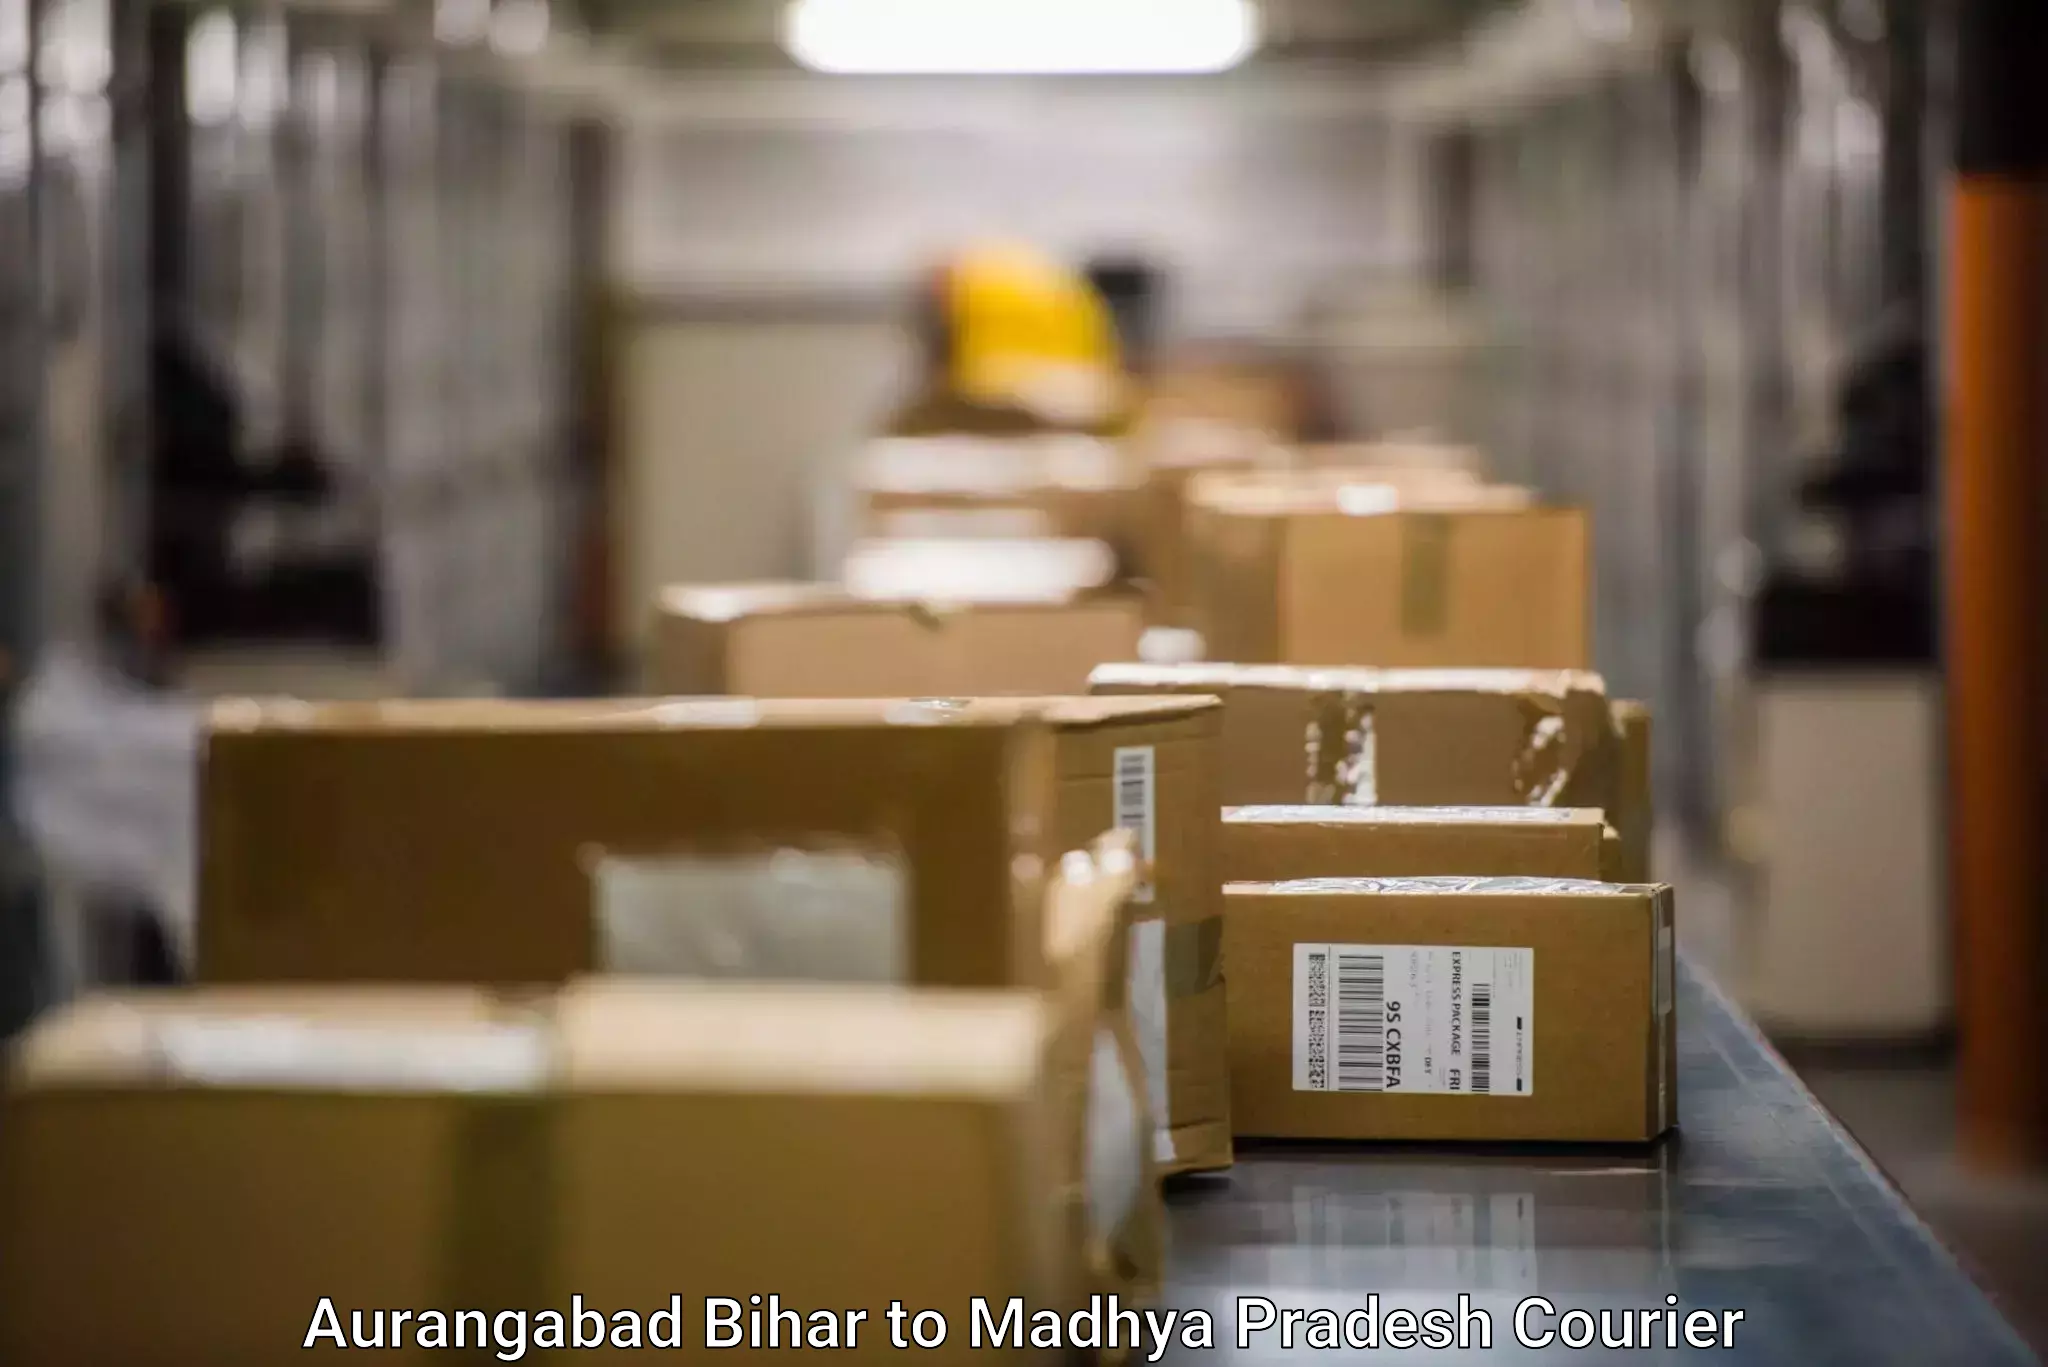 Digital shipping tools Aurangabad Bihar to Dhamnod